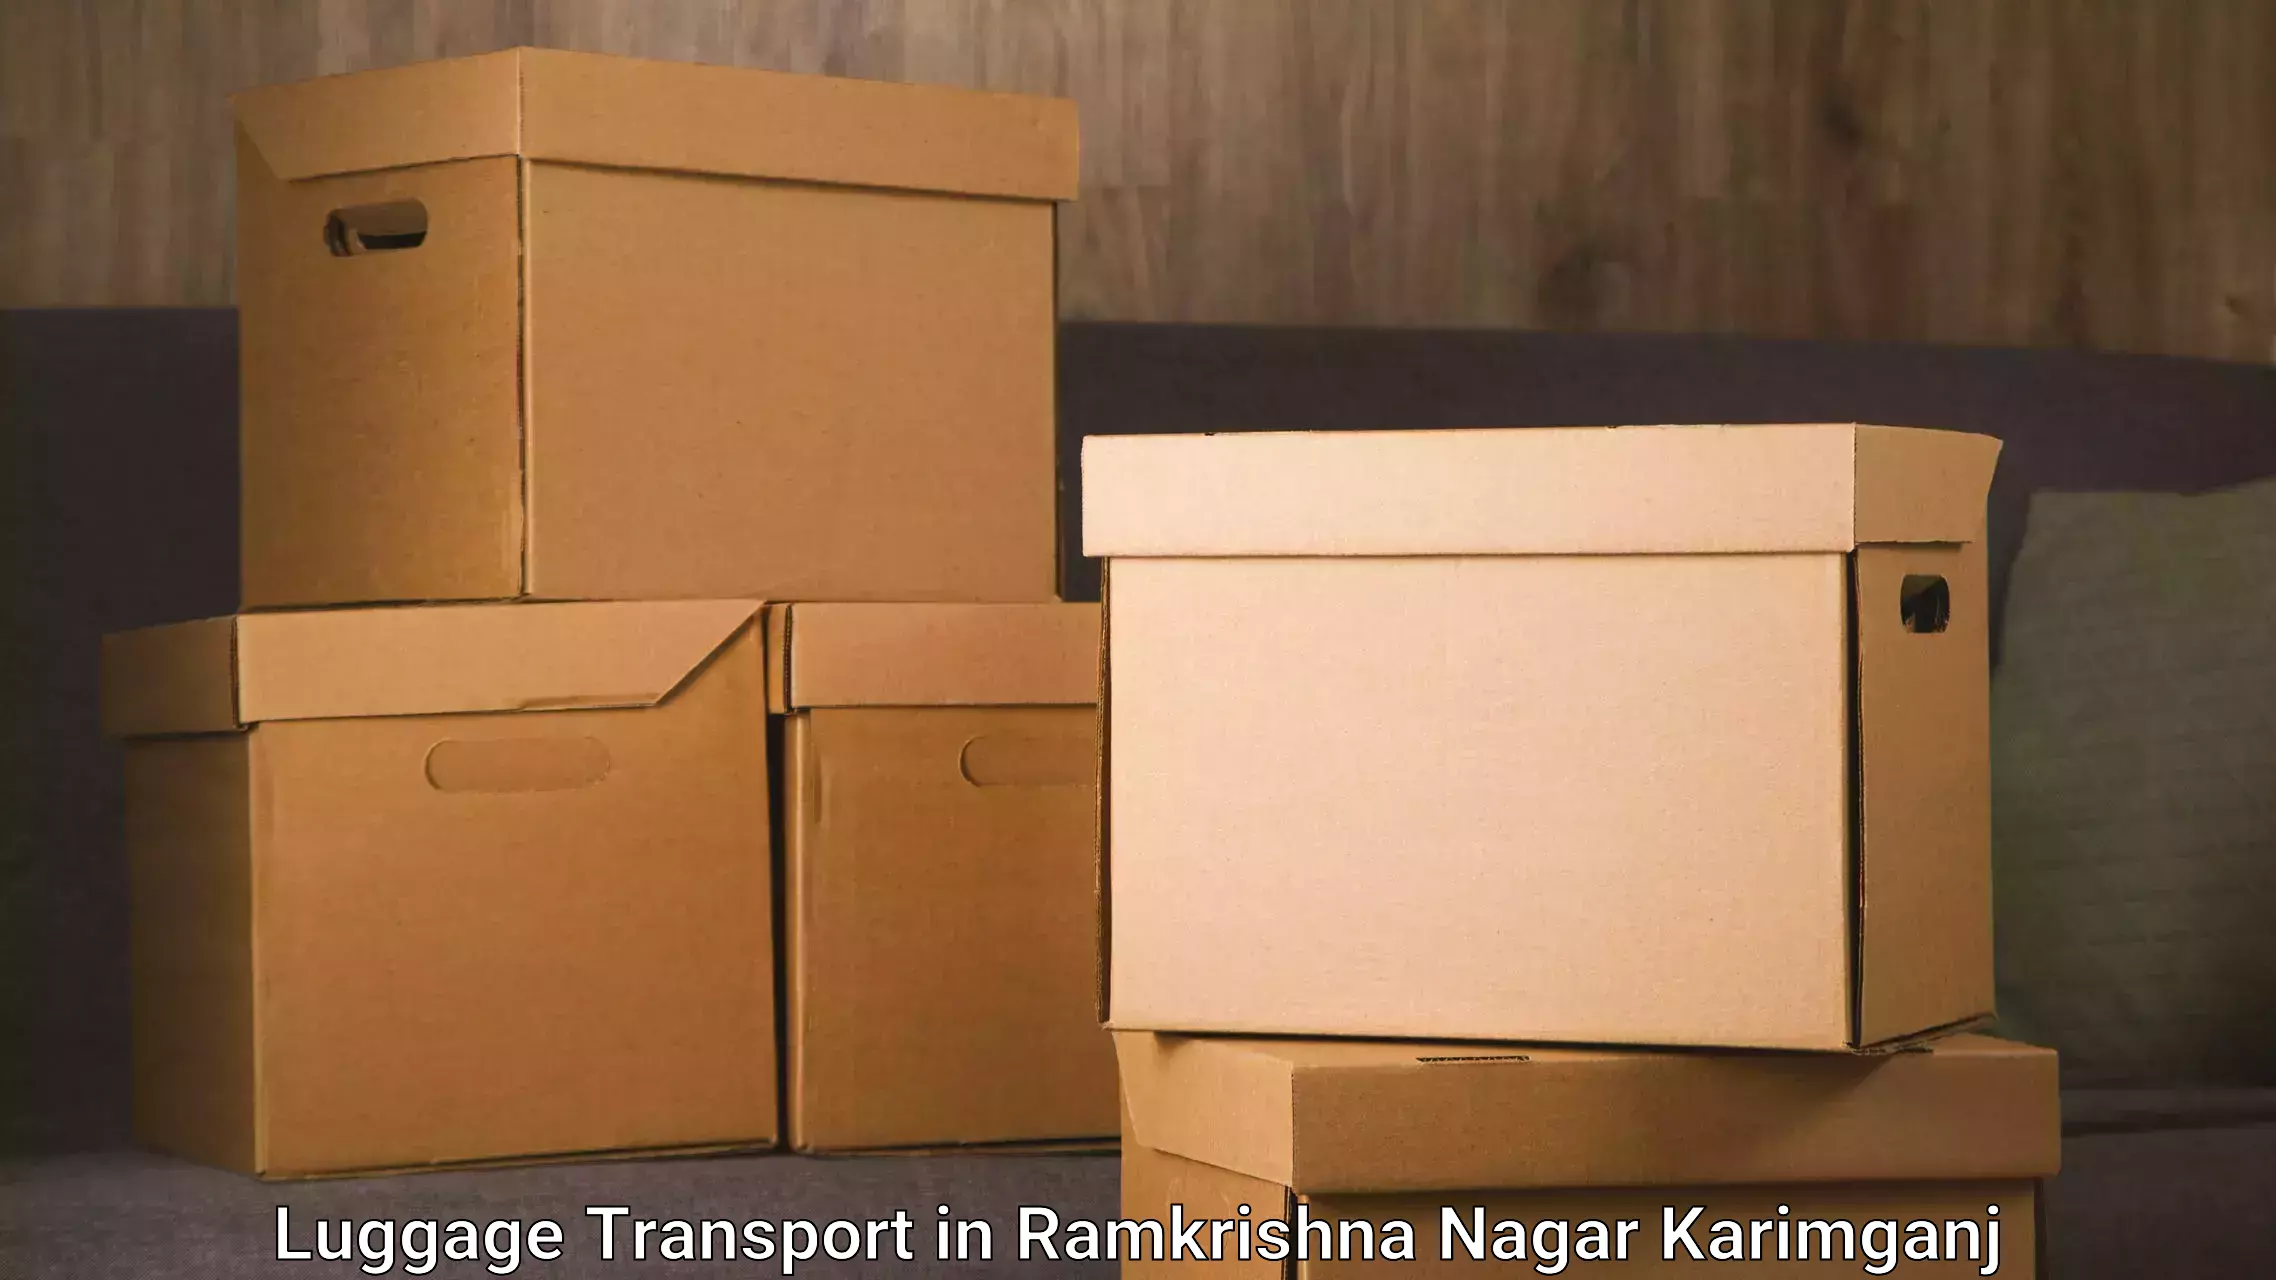 Luggage shipment processing in Ramkrishna Nagar Karimganj